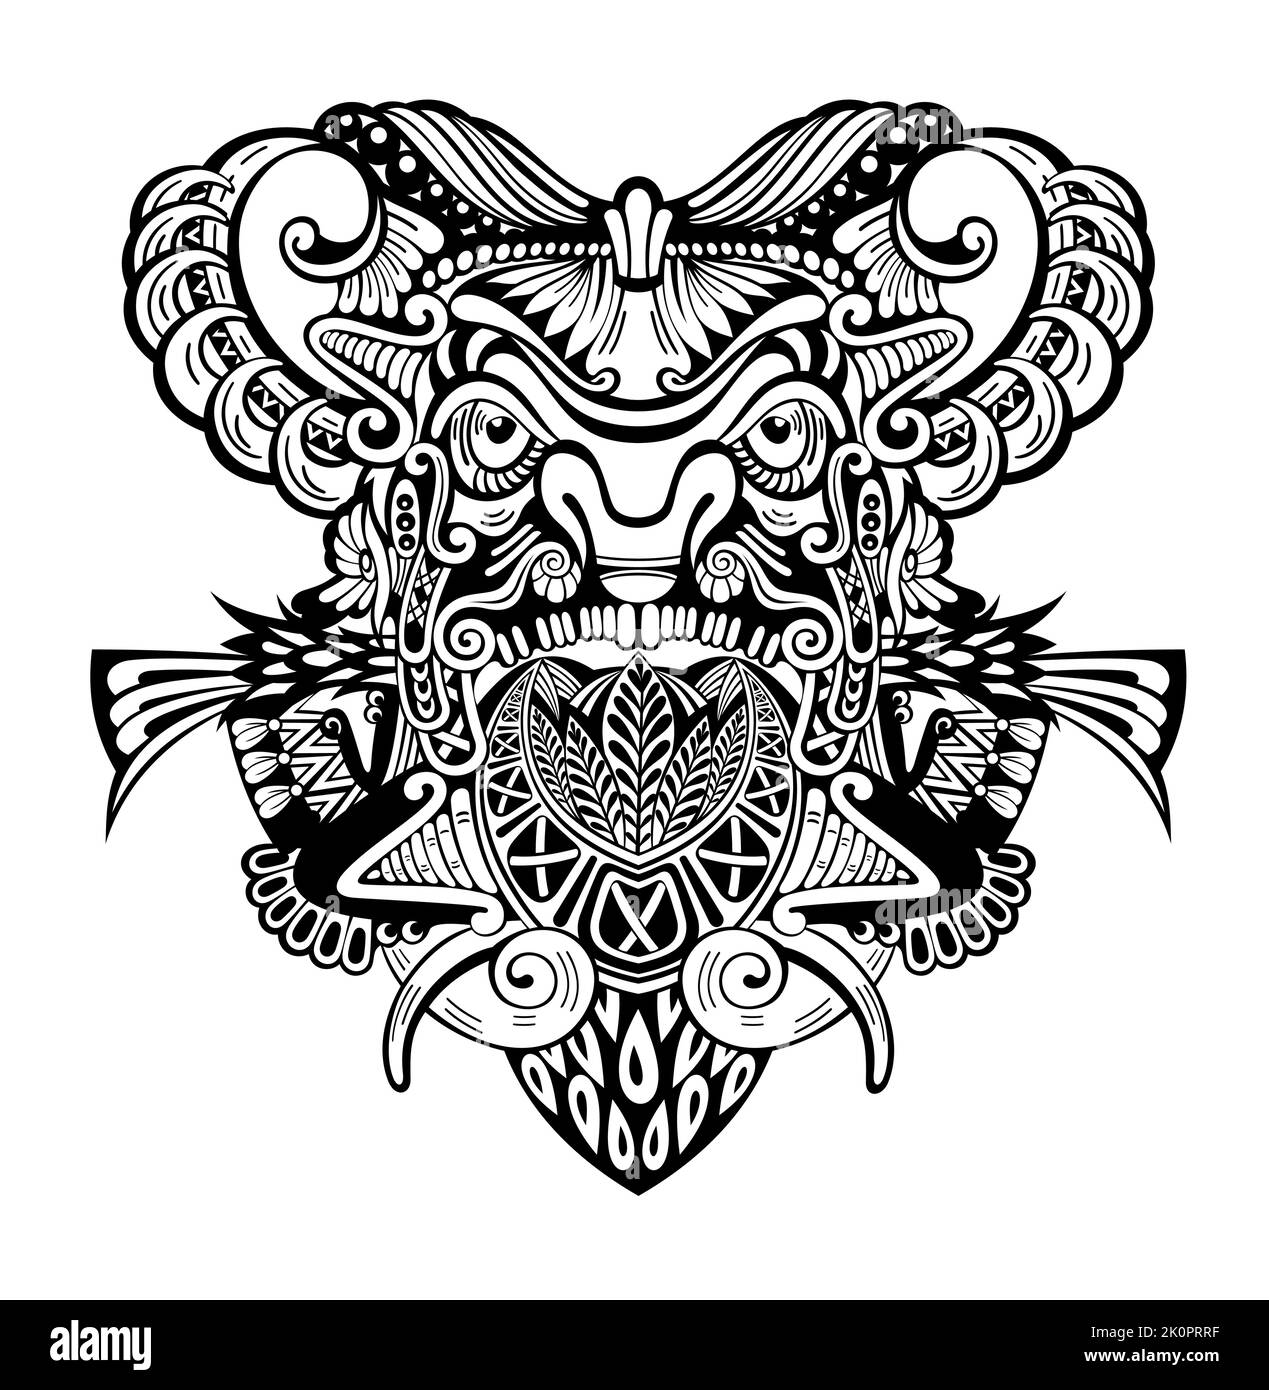 Polynesische Maske im Tattoo-Design. Natives Ornament, isoliert auf Weiß, Vektorgrafik Stock Vektor